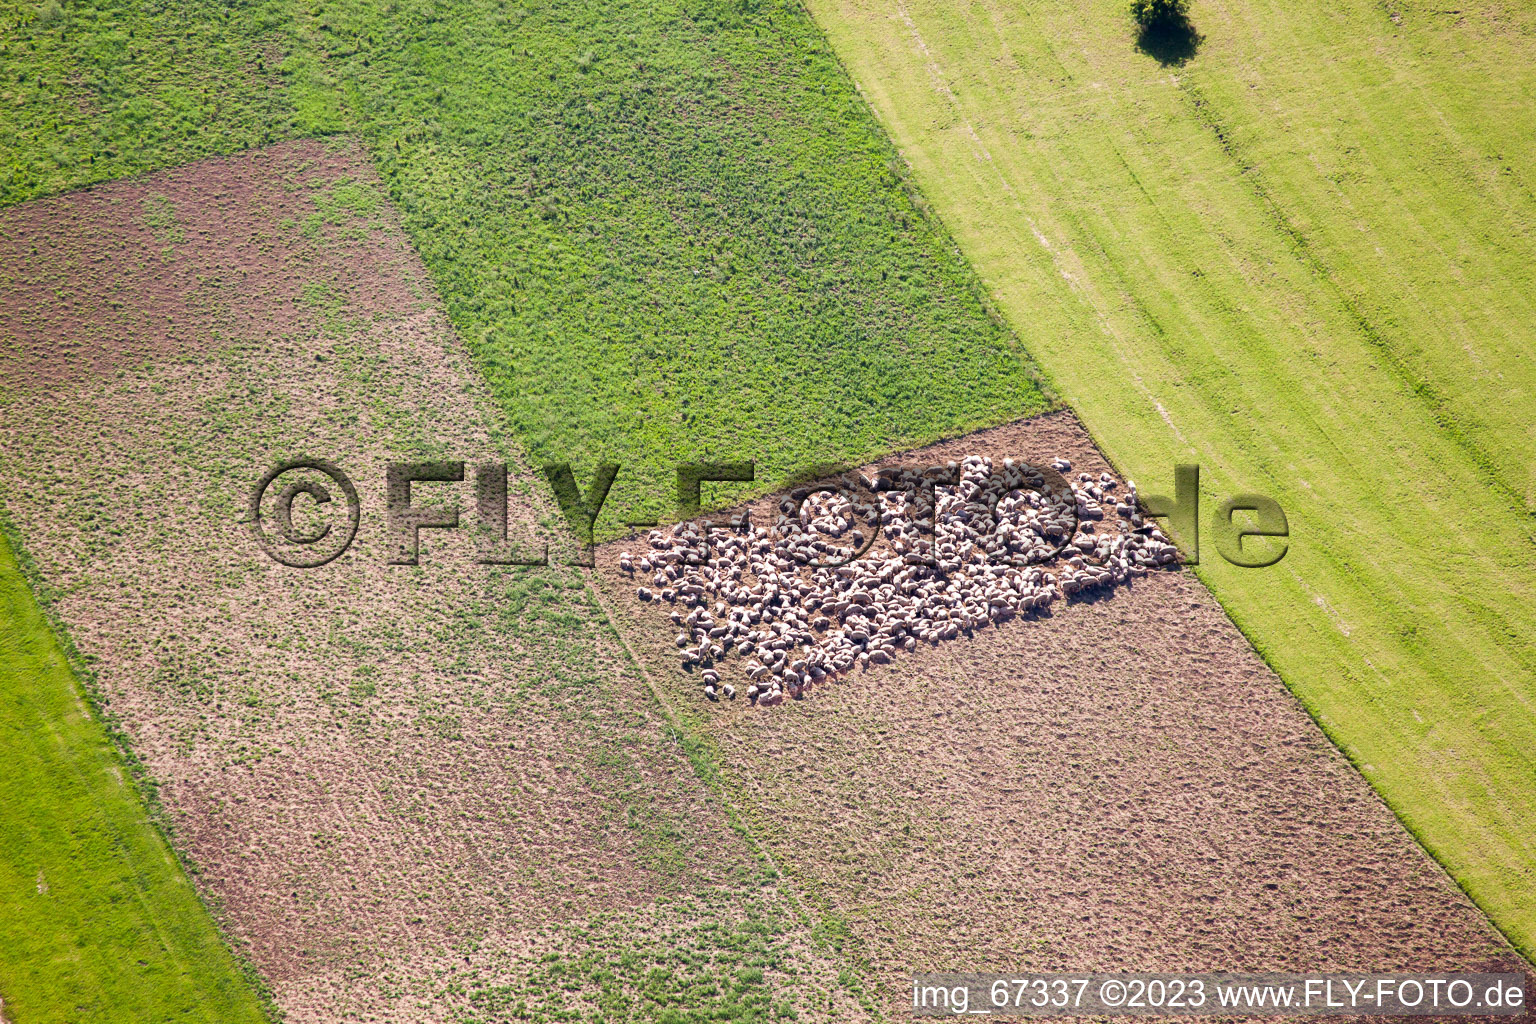 Sheep pen in fields in Feldstetten in the state Baden-Wuerttemberg, Germany